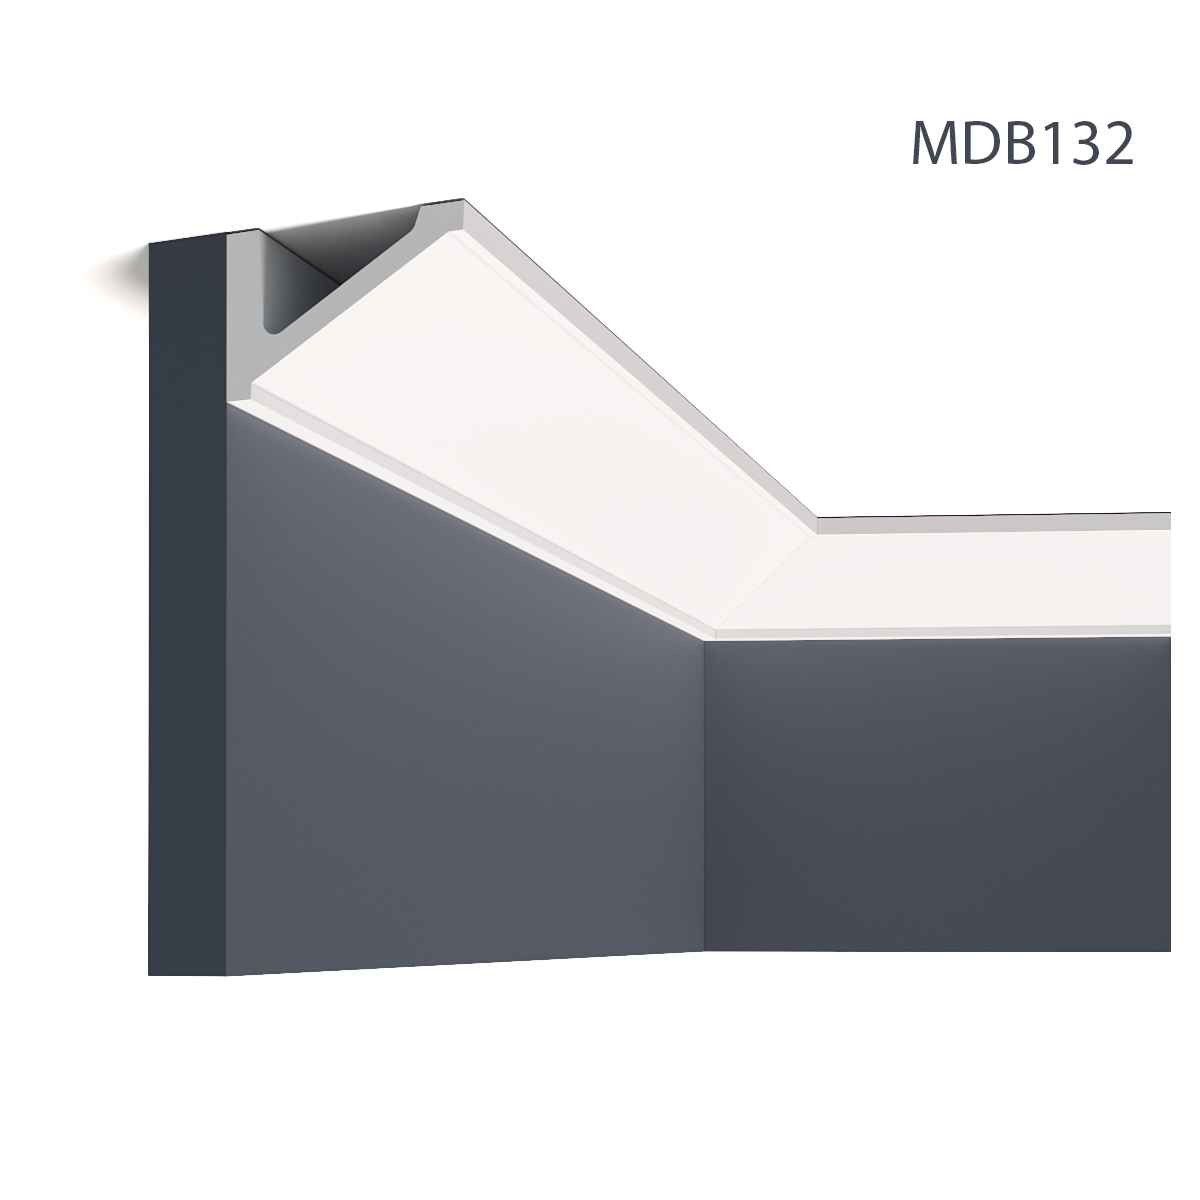 Profile Decorative Mardom Decor MRD-MDB132. Conține culorile: